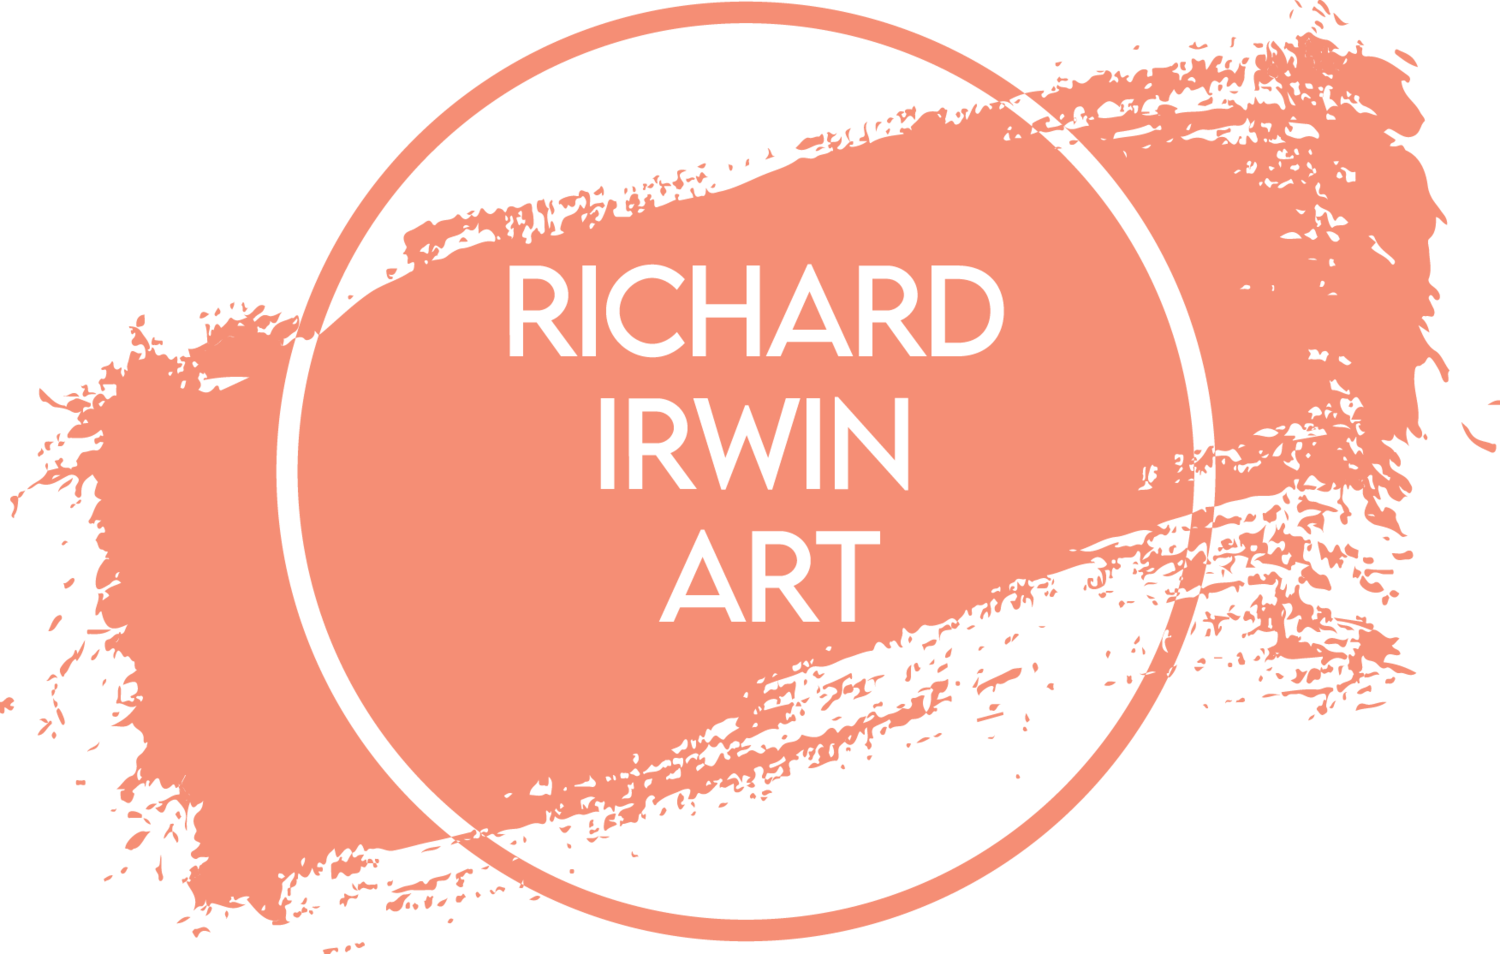  Richard Irwin Art